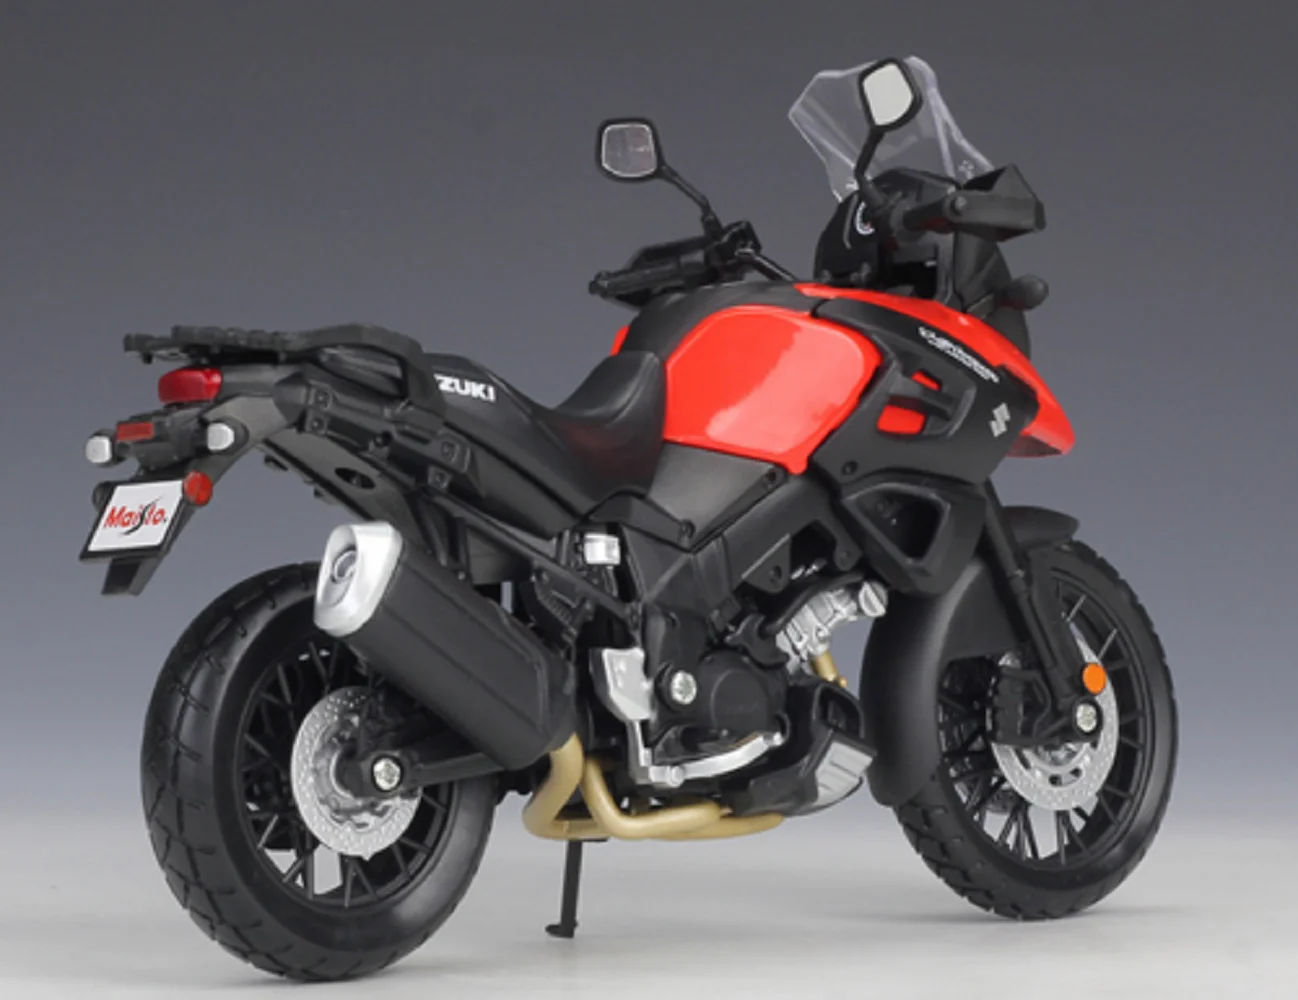 Maisto 1:12 Suzuki V-Strom Motociklu, Velosipēdu Lējumiem Modelis Jauns Kastē